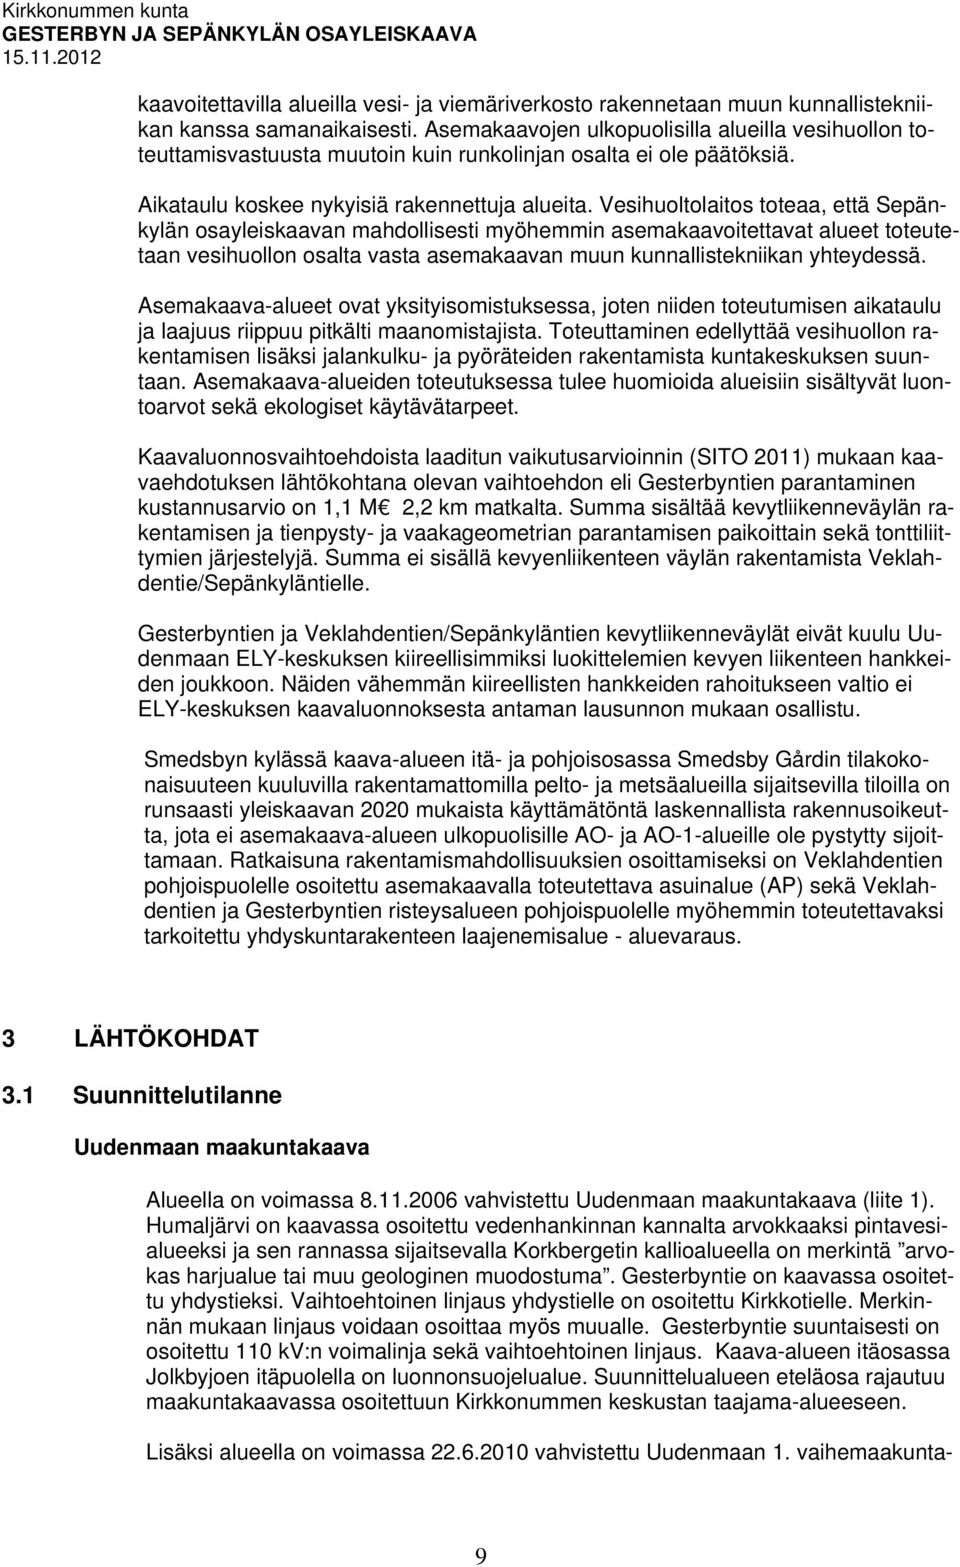 Vesihuoltolaitos toteaa, että Sepänkylän osayleiskaavan mahdollisesti myöhemmin asemakaavoitettavat alueet toteutetaan vesihuollon osalta vasta asemakaavan muun kunnallistekniikan yhteydessä.